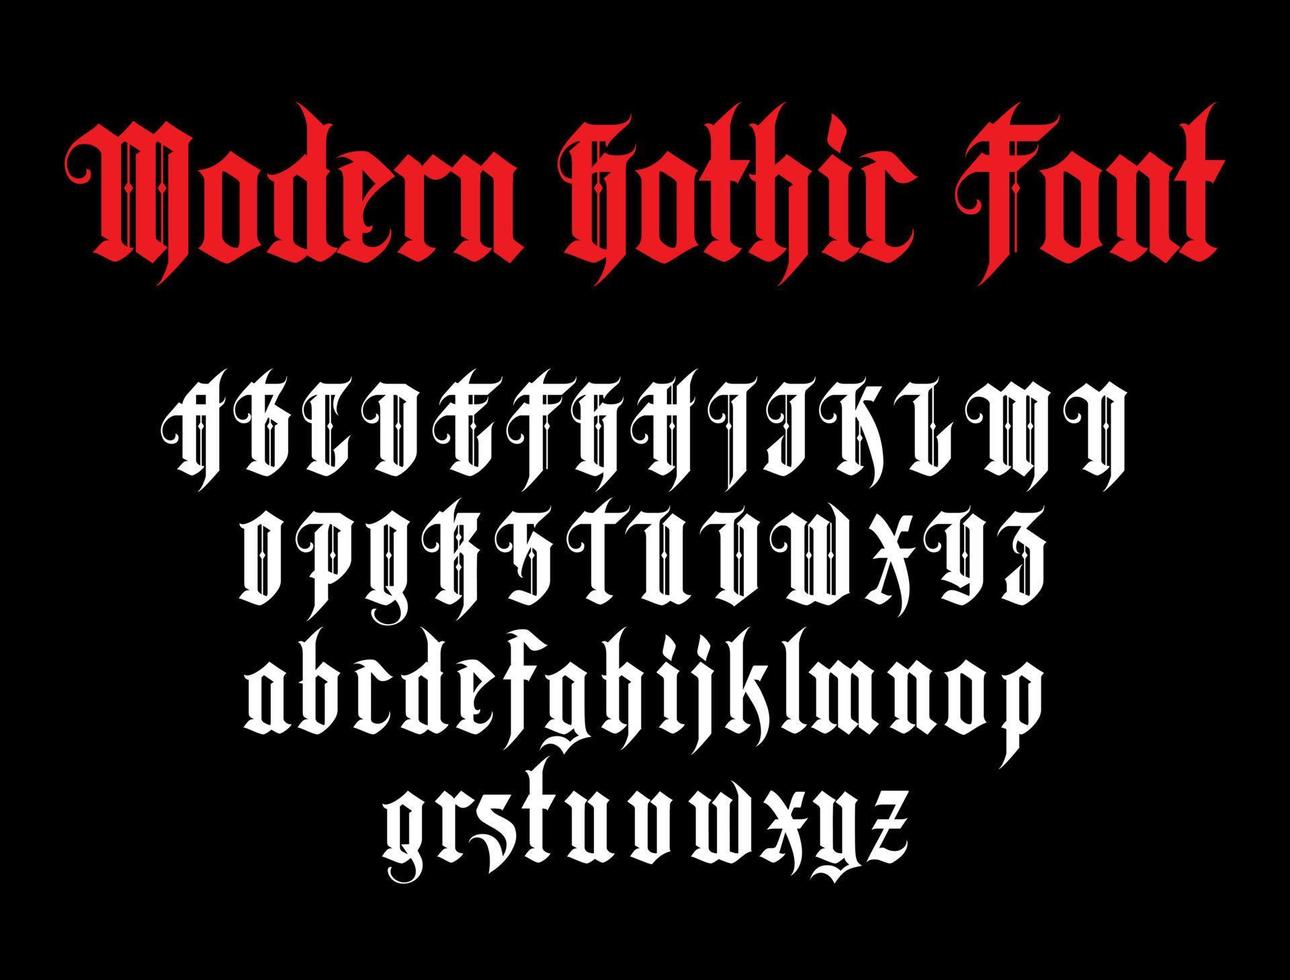 Vektor modernes gotisches Alphabet im Rahmen. Vintage-Schriftart. Typografie für Etiketten, Schlagzeilen, Plakate etc.